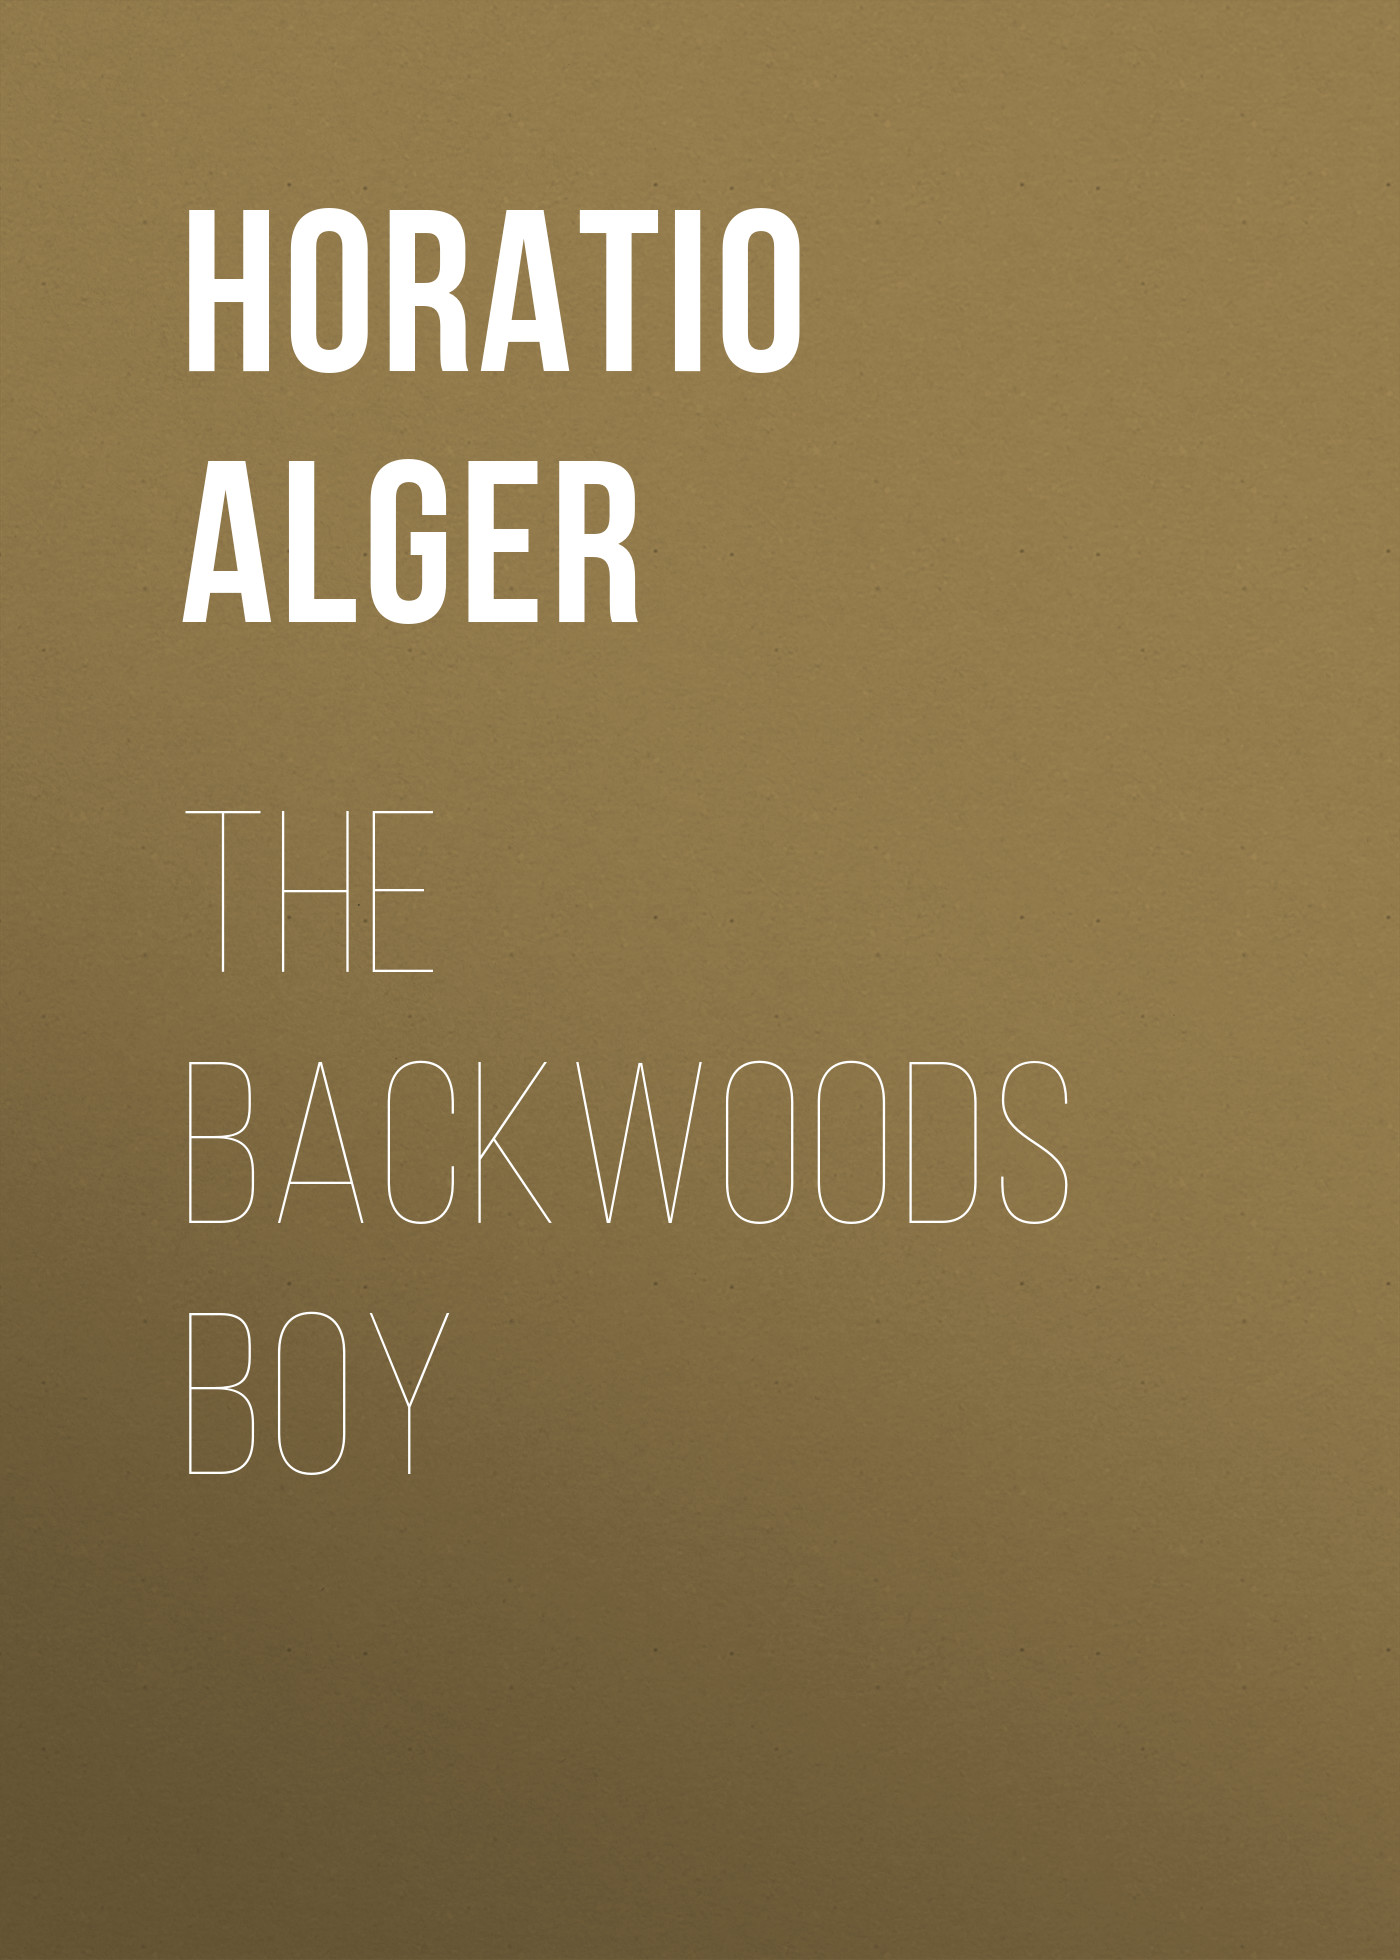 Книга The Backwoods Boy из серии , созданная Horatio Alger, может относится к жанру Зарубежная классика, Иностранные языки. Стоимость электронной книги The Backwoods Boy с идентификатором 23171523 составляет 5.99 руб.